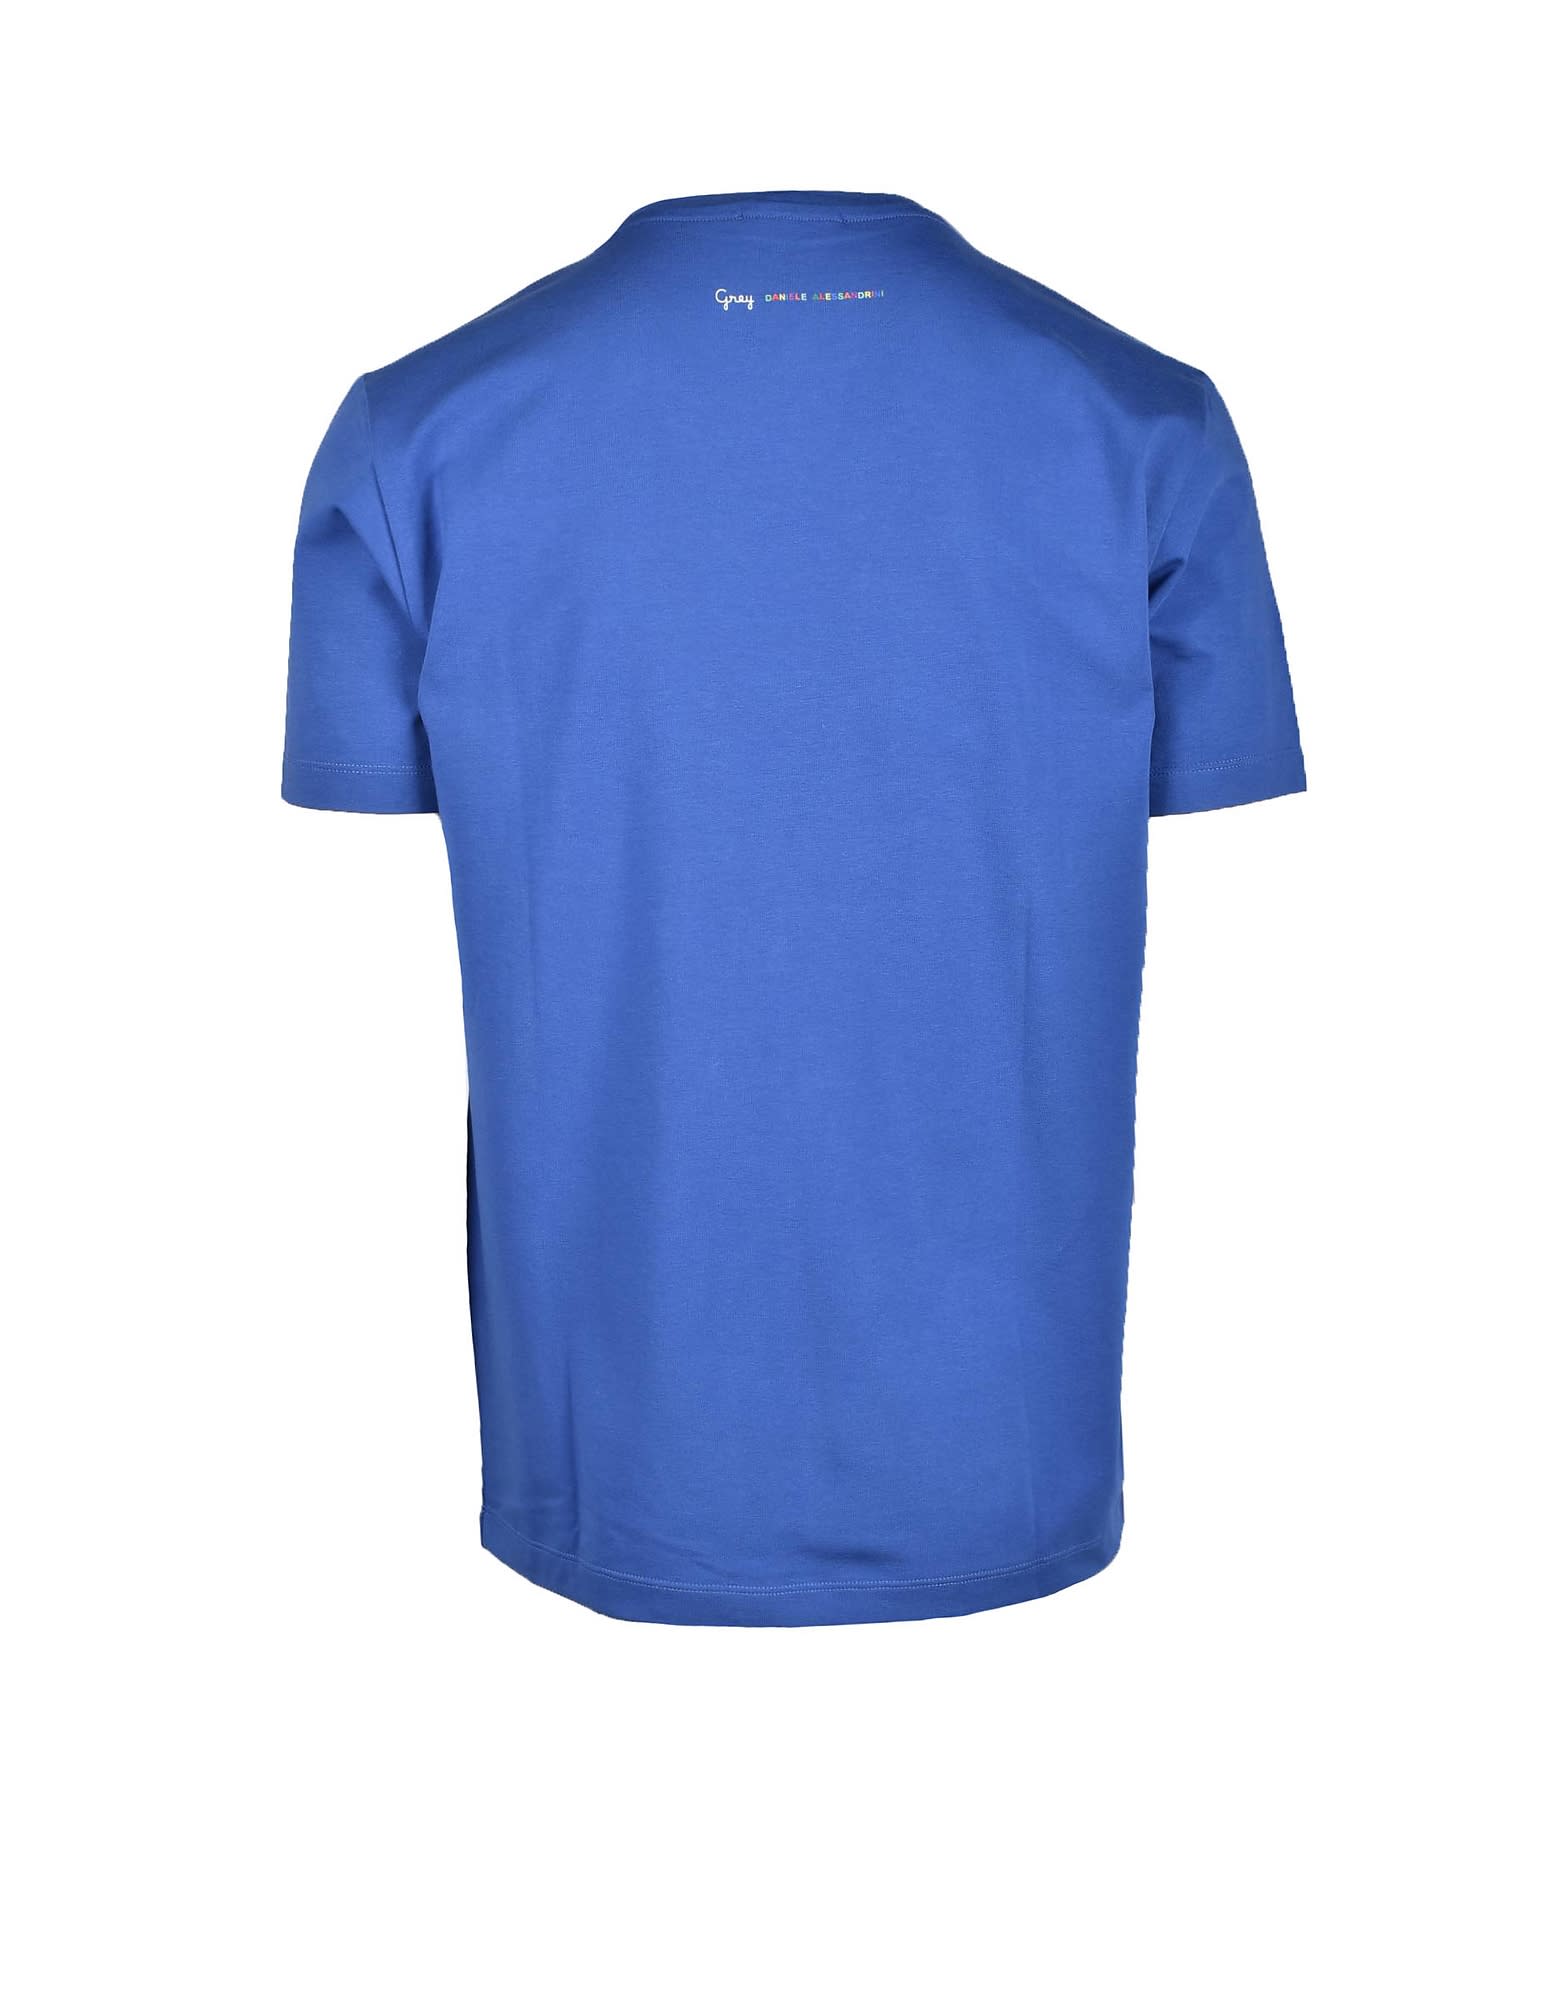 Mens Bluette T-shirt